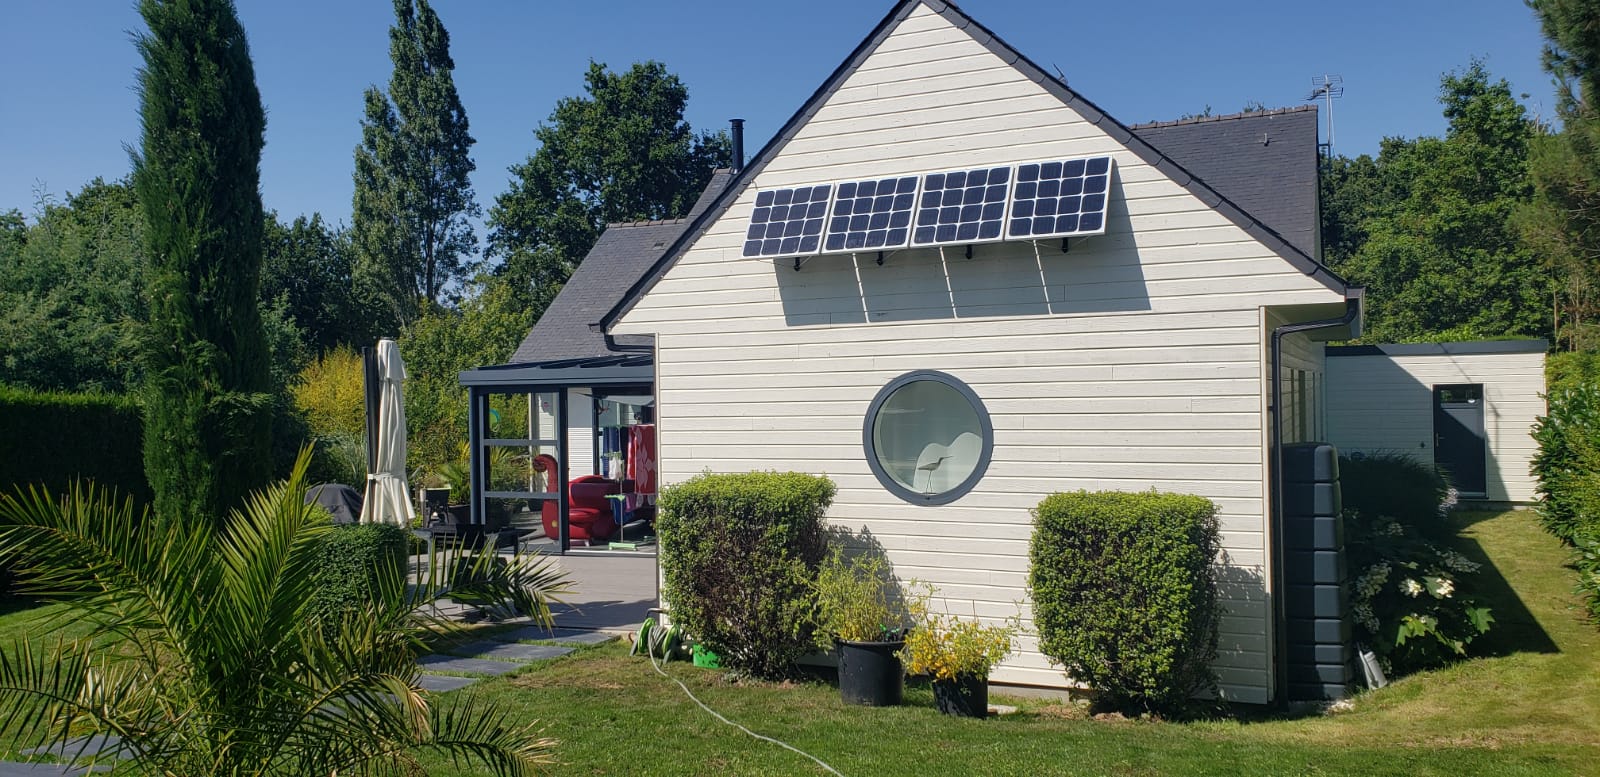 Maison avec kit panneau solaire